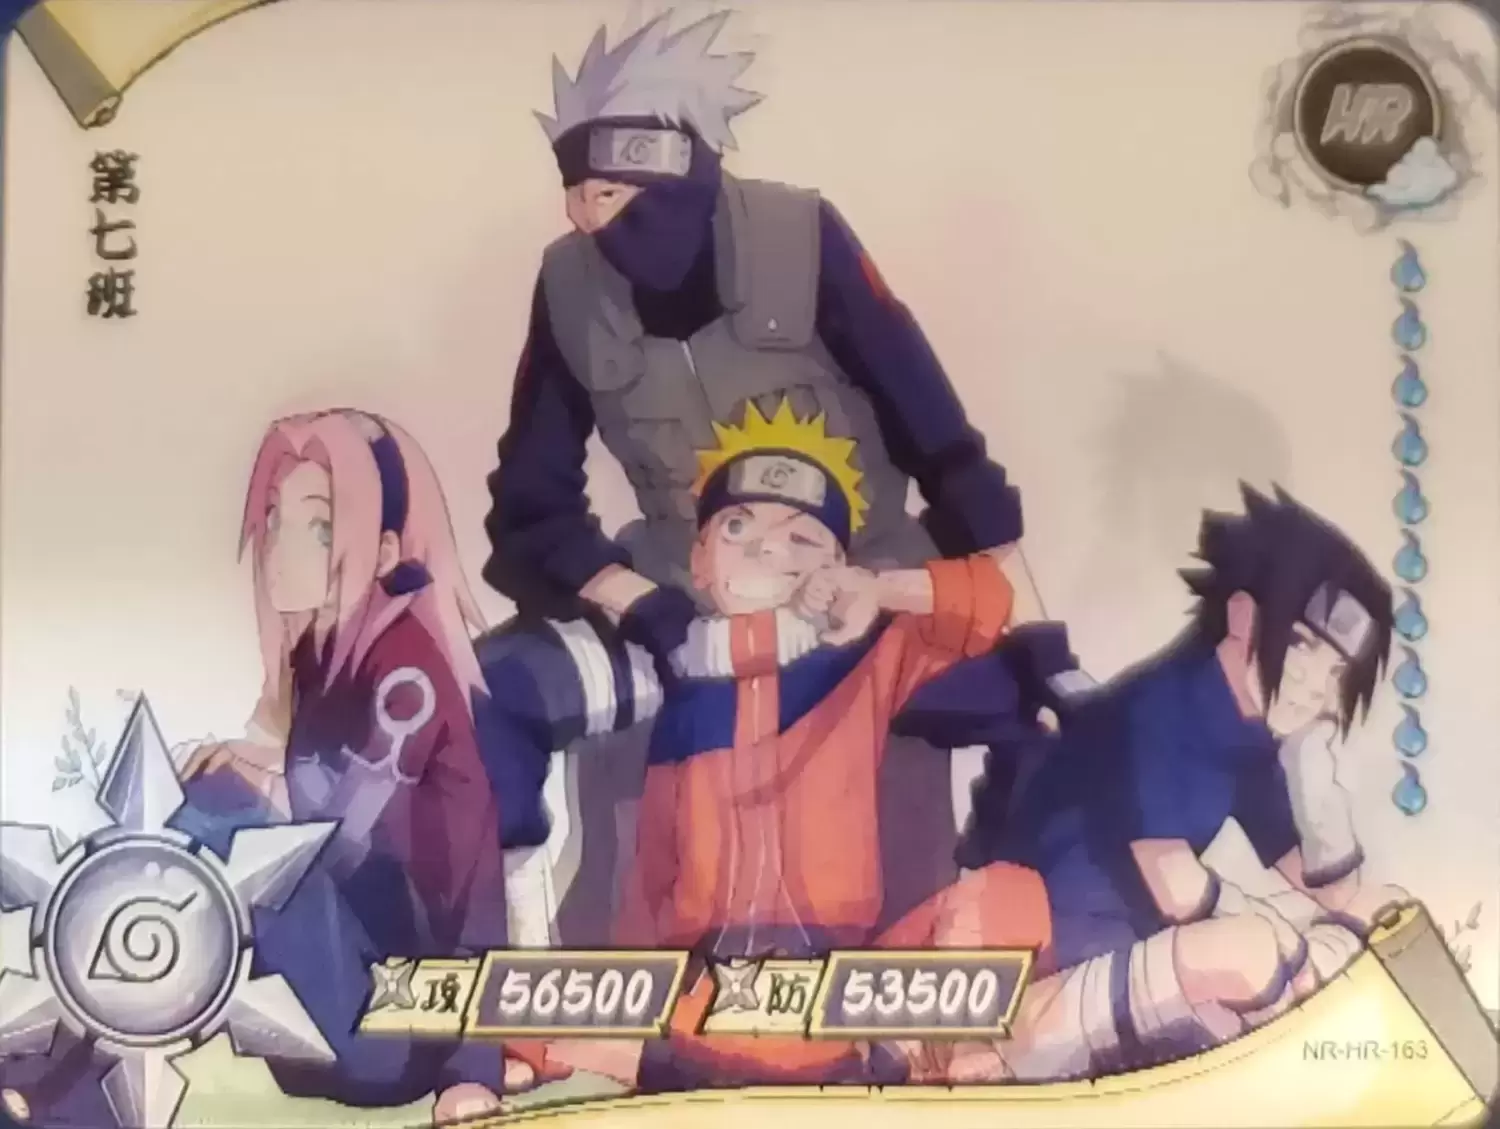 Naruto, Sakura, Sasuke & Kakashi  Naruto sasuke sakura, Anime, Naruto  kakashi